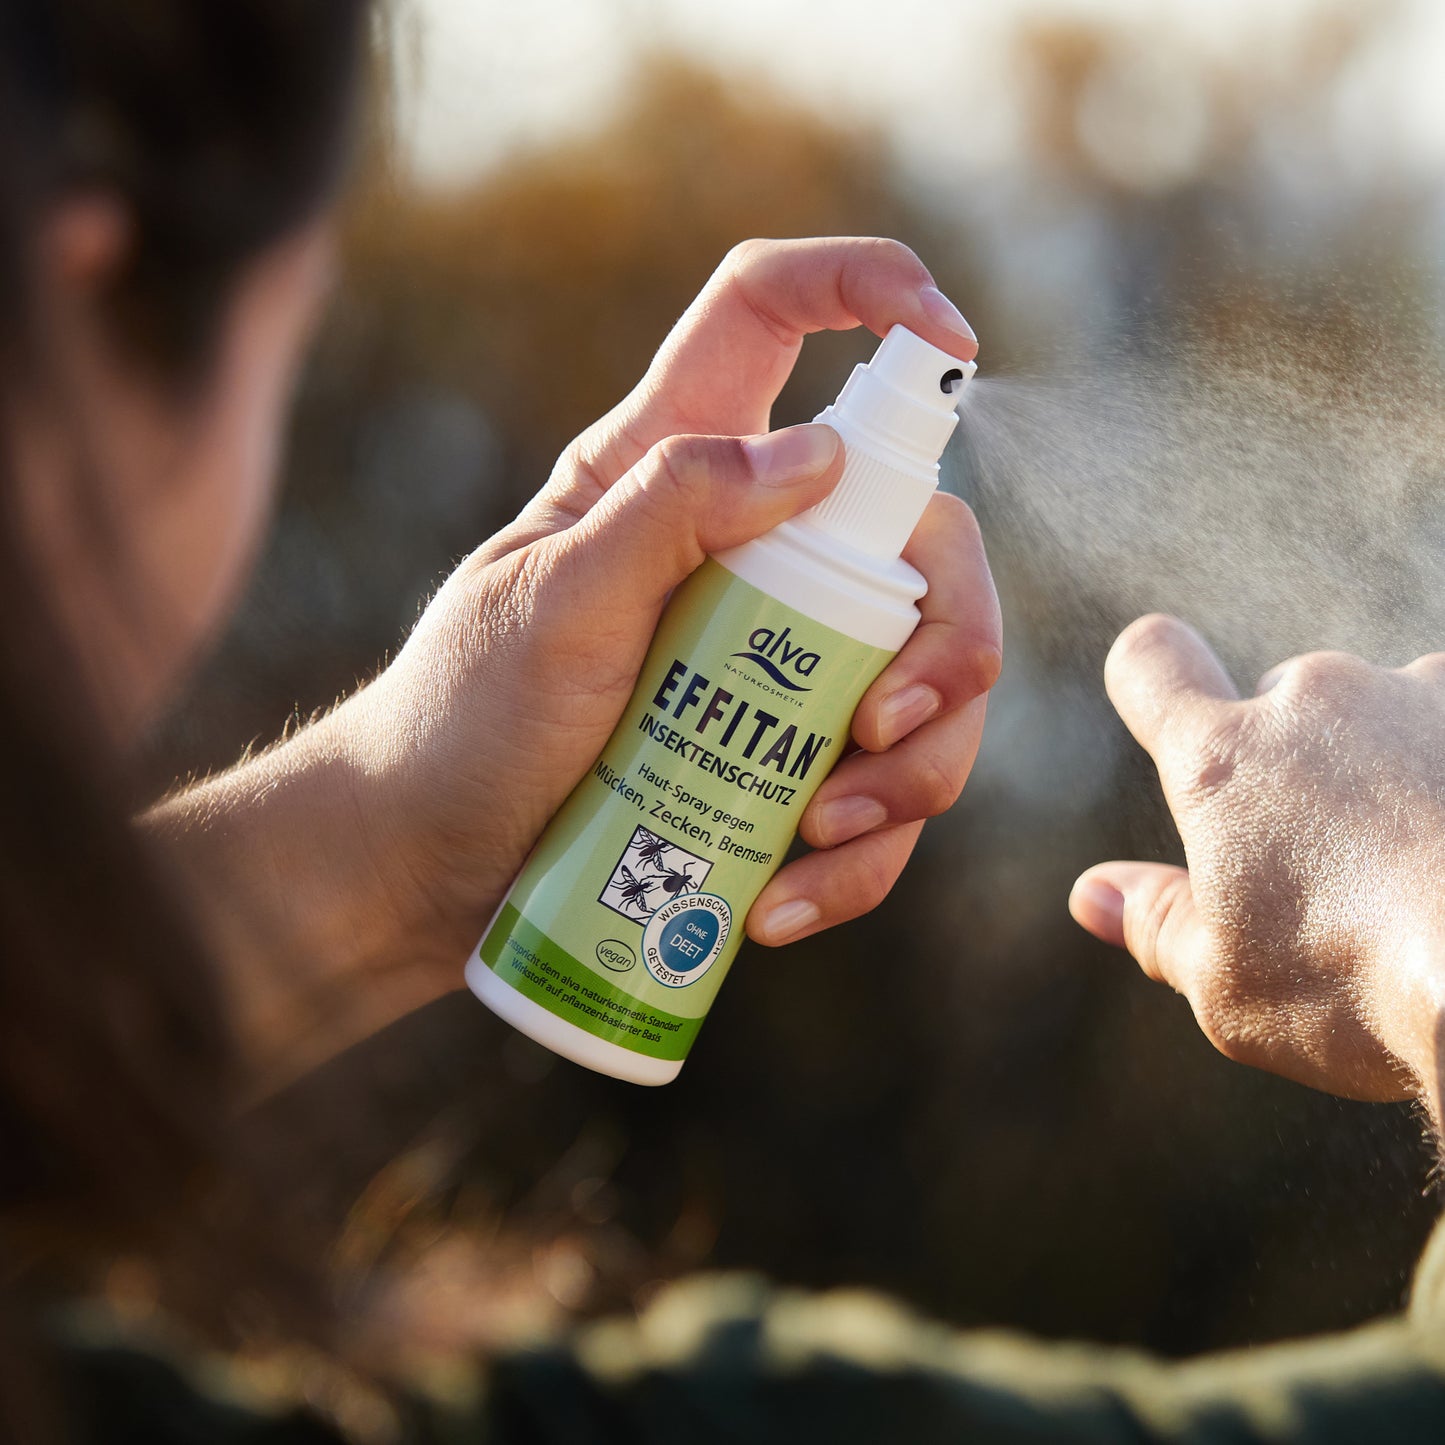 alva Effitan Spray sprüht das Insektenschutzmittel auf die Haut eines Models auf